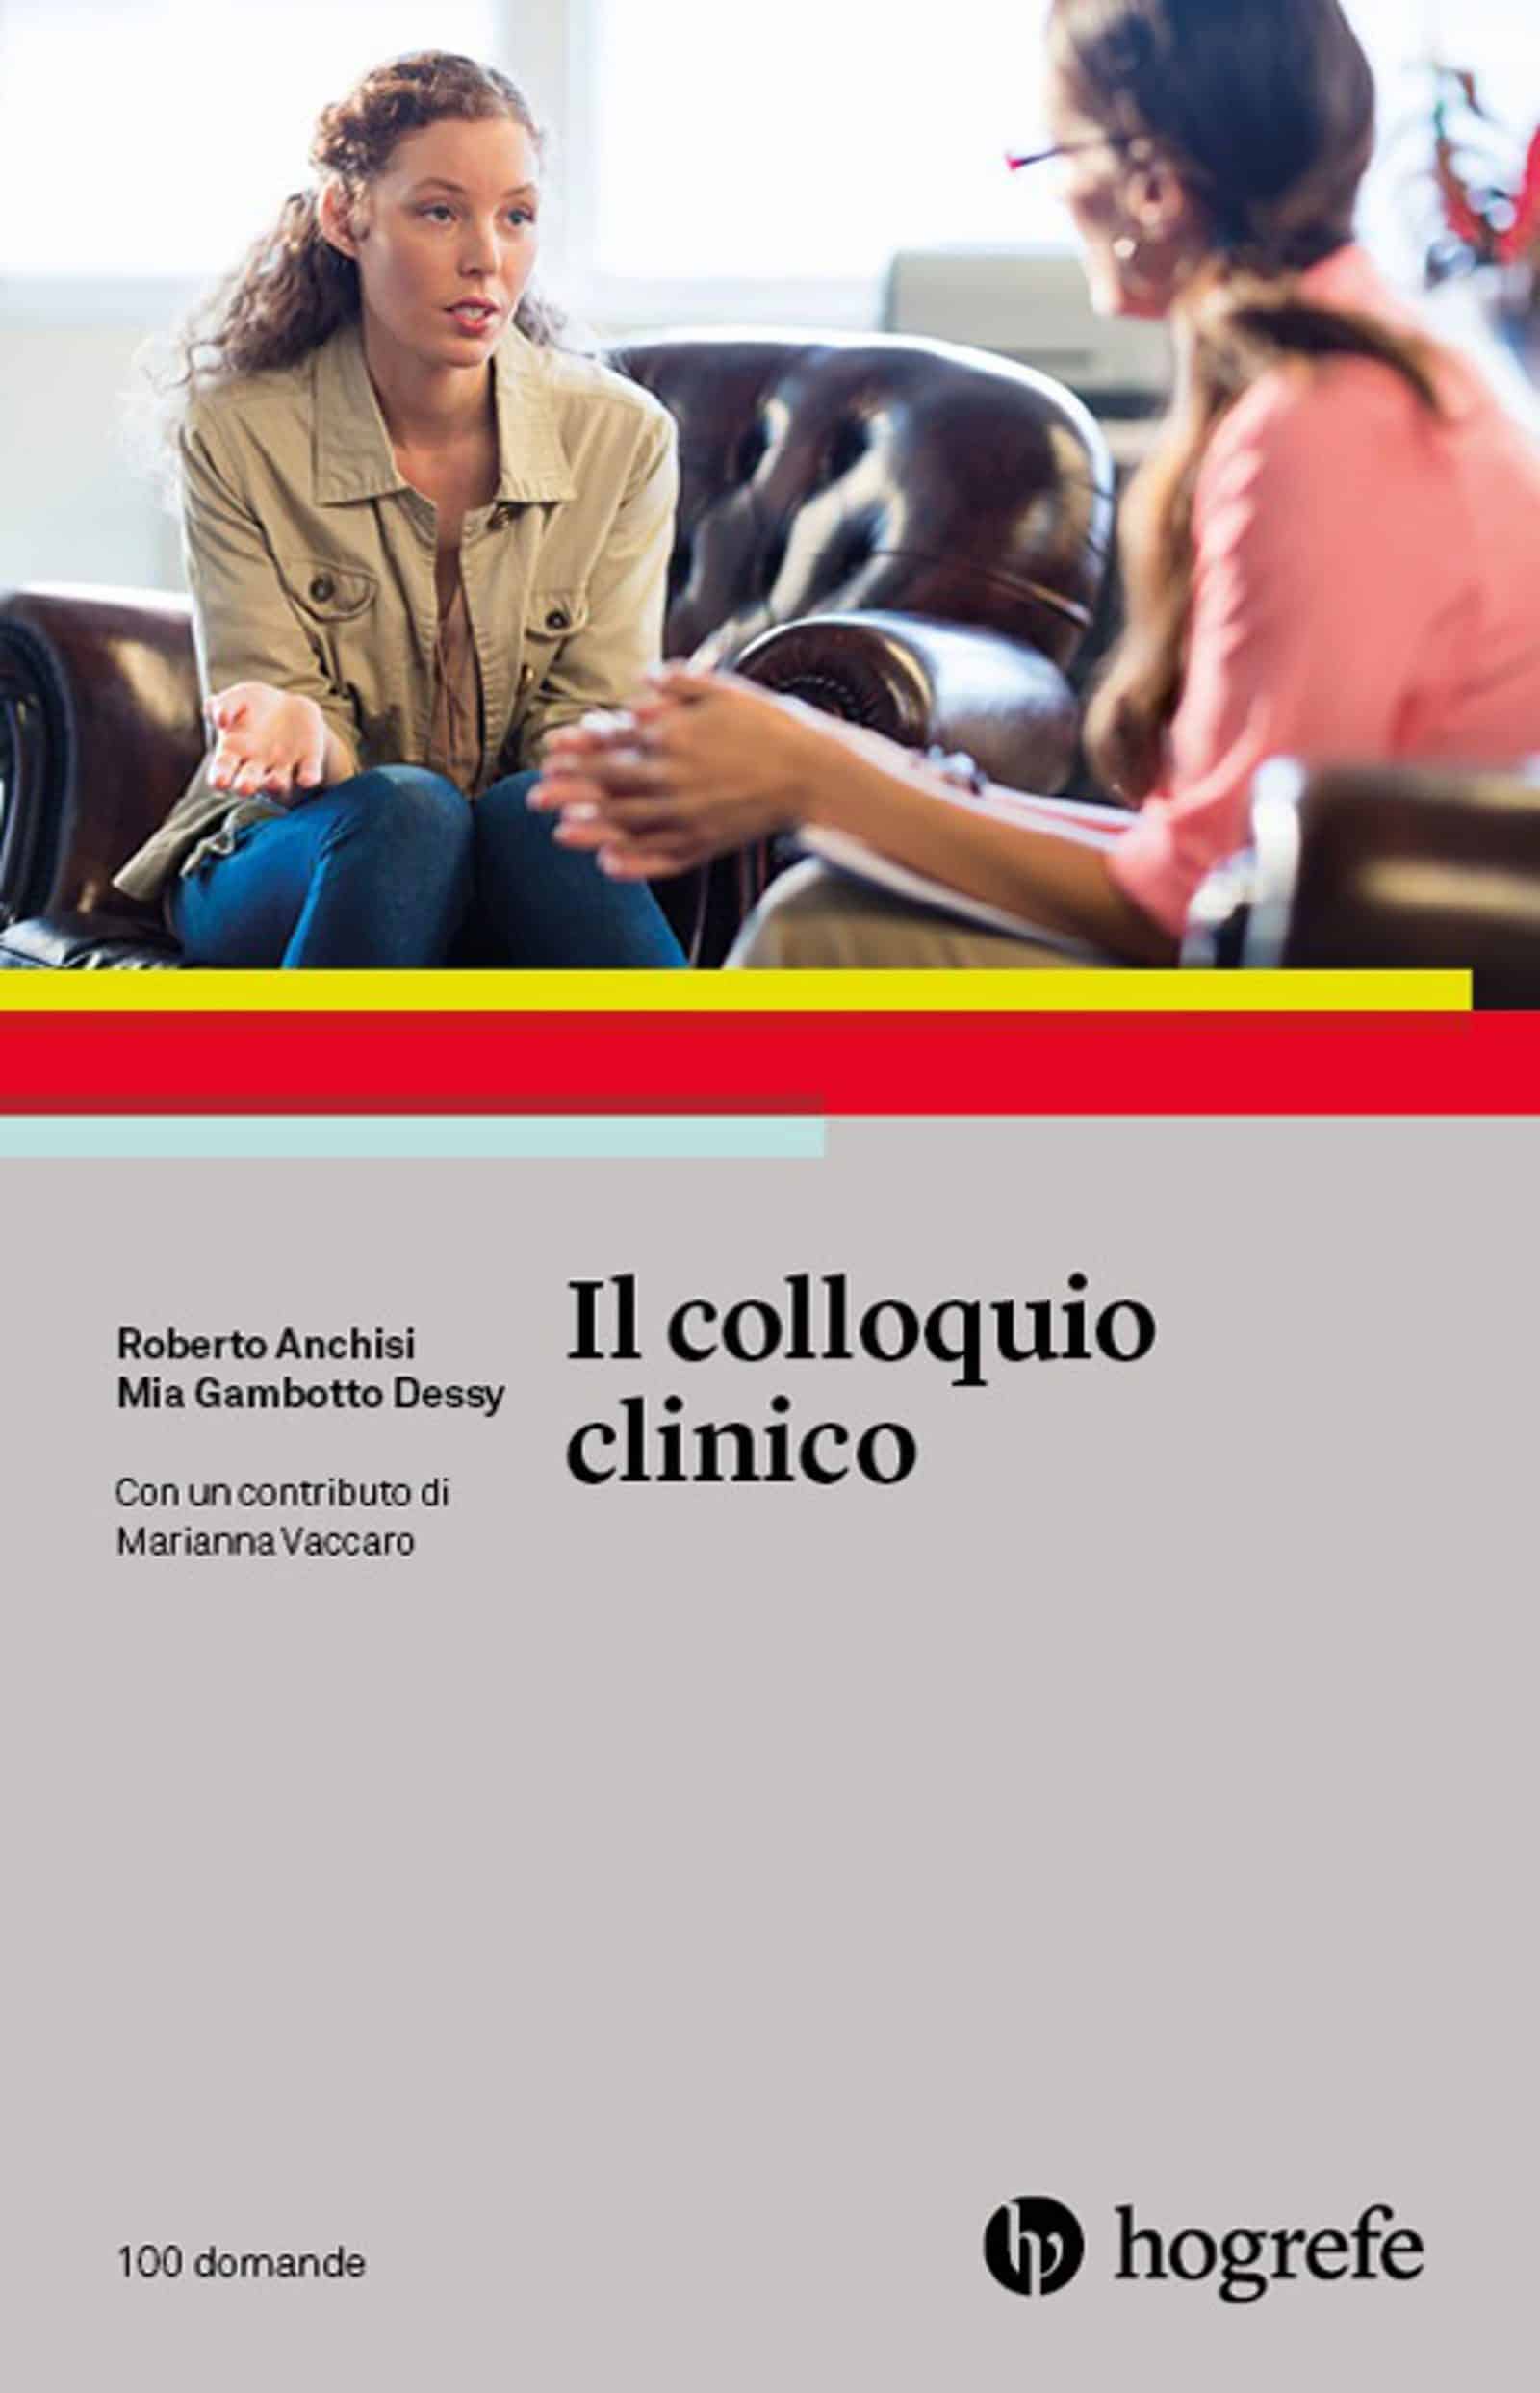 Il colloquio clinico di E Anchisi e M Gambotto Dessy Recensione del libro featured